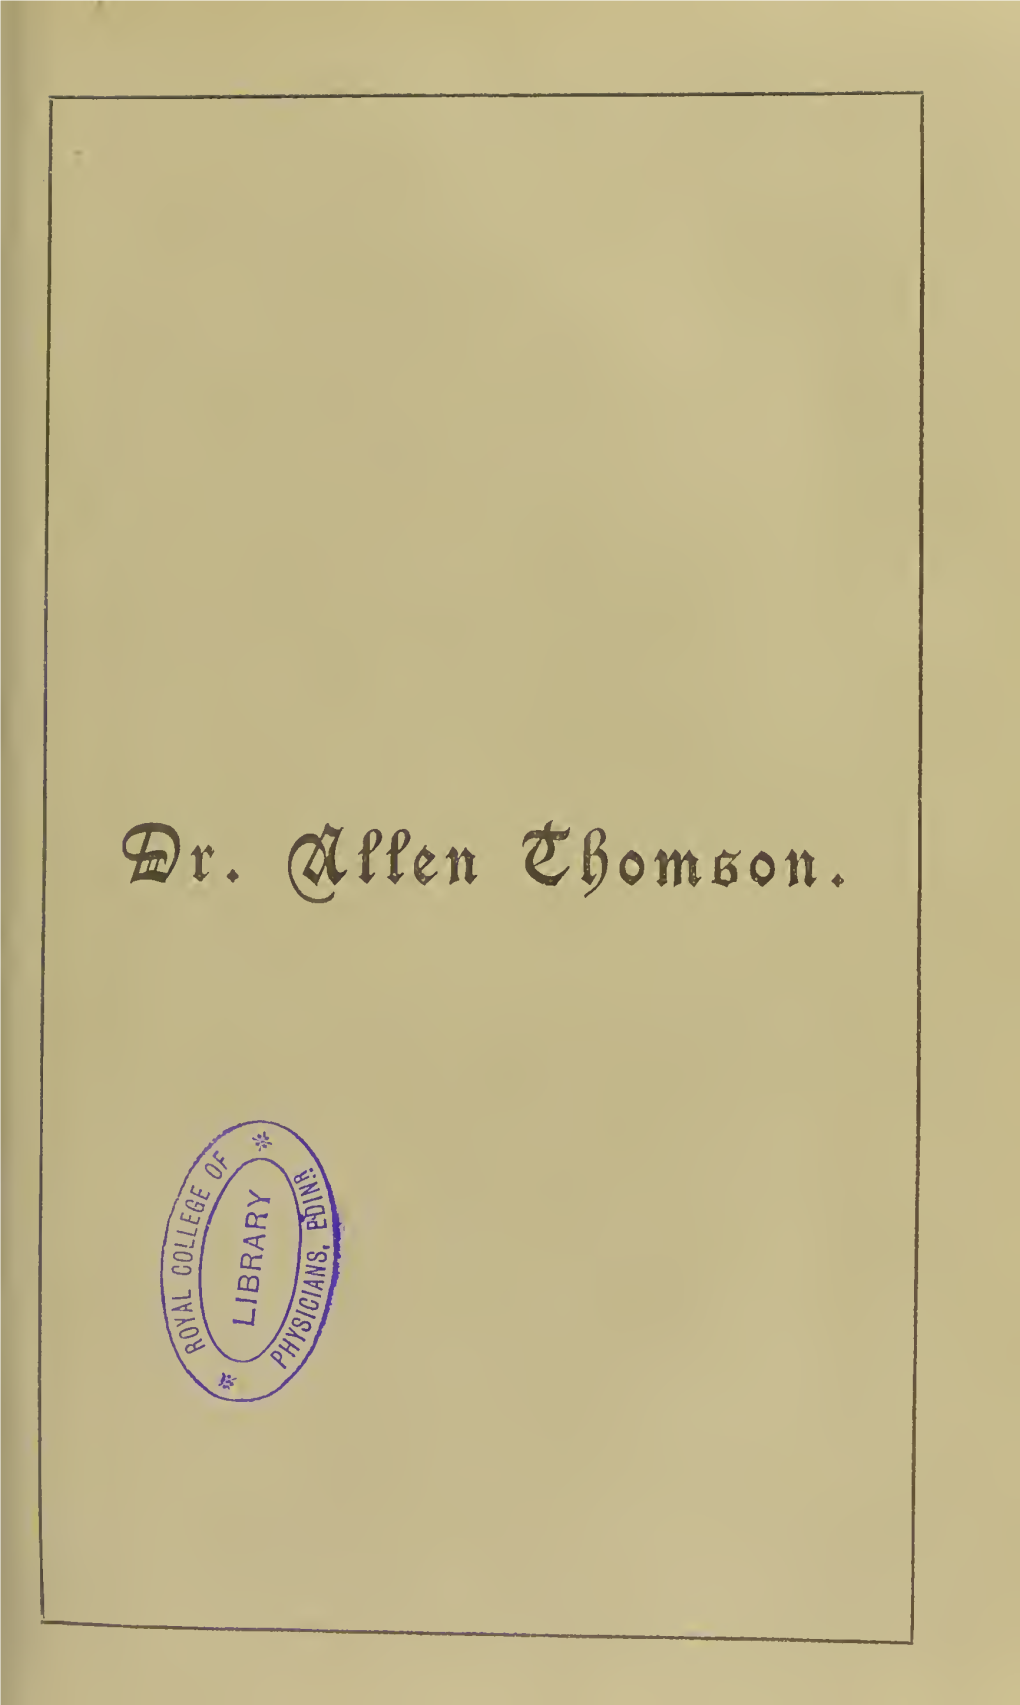 Dr. Allen Thomson